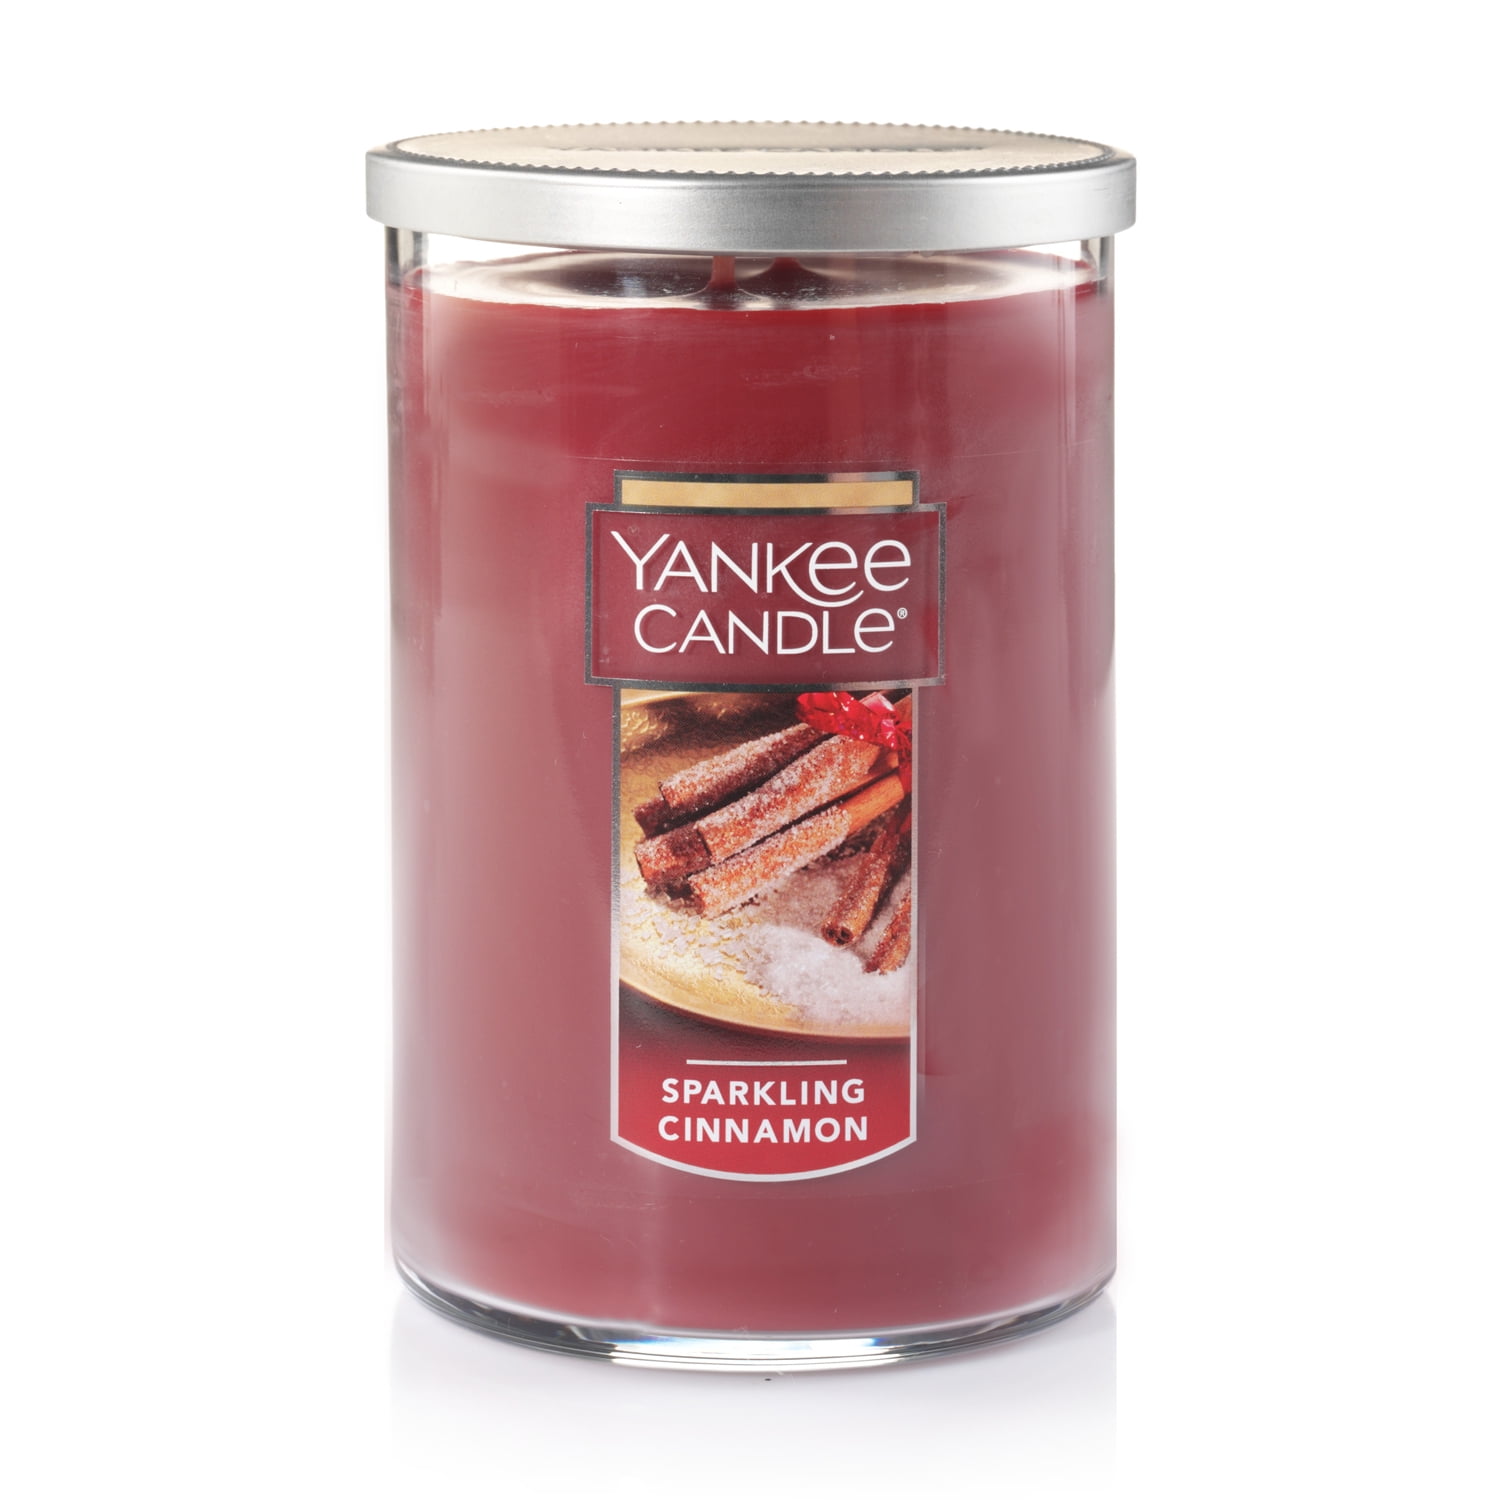 /340 g Nouveaux Yankee Candle Moyen Jar/Cinnamon Spice Cookie/parfumée 14.5 Oz environ 411.06 g